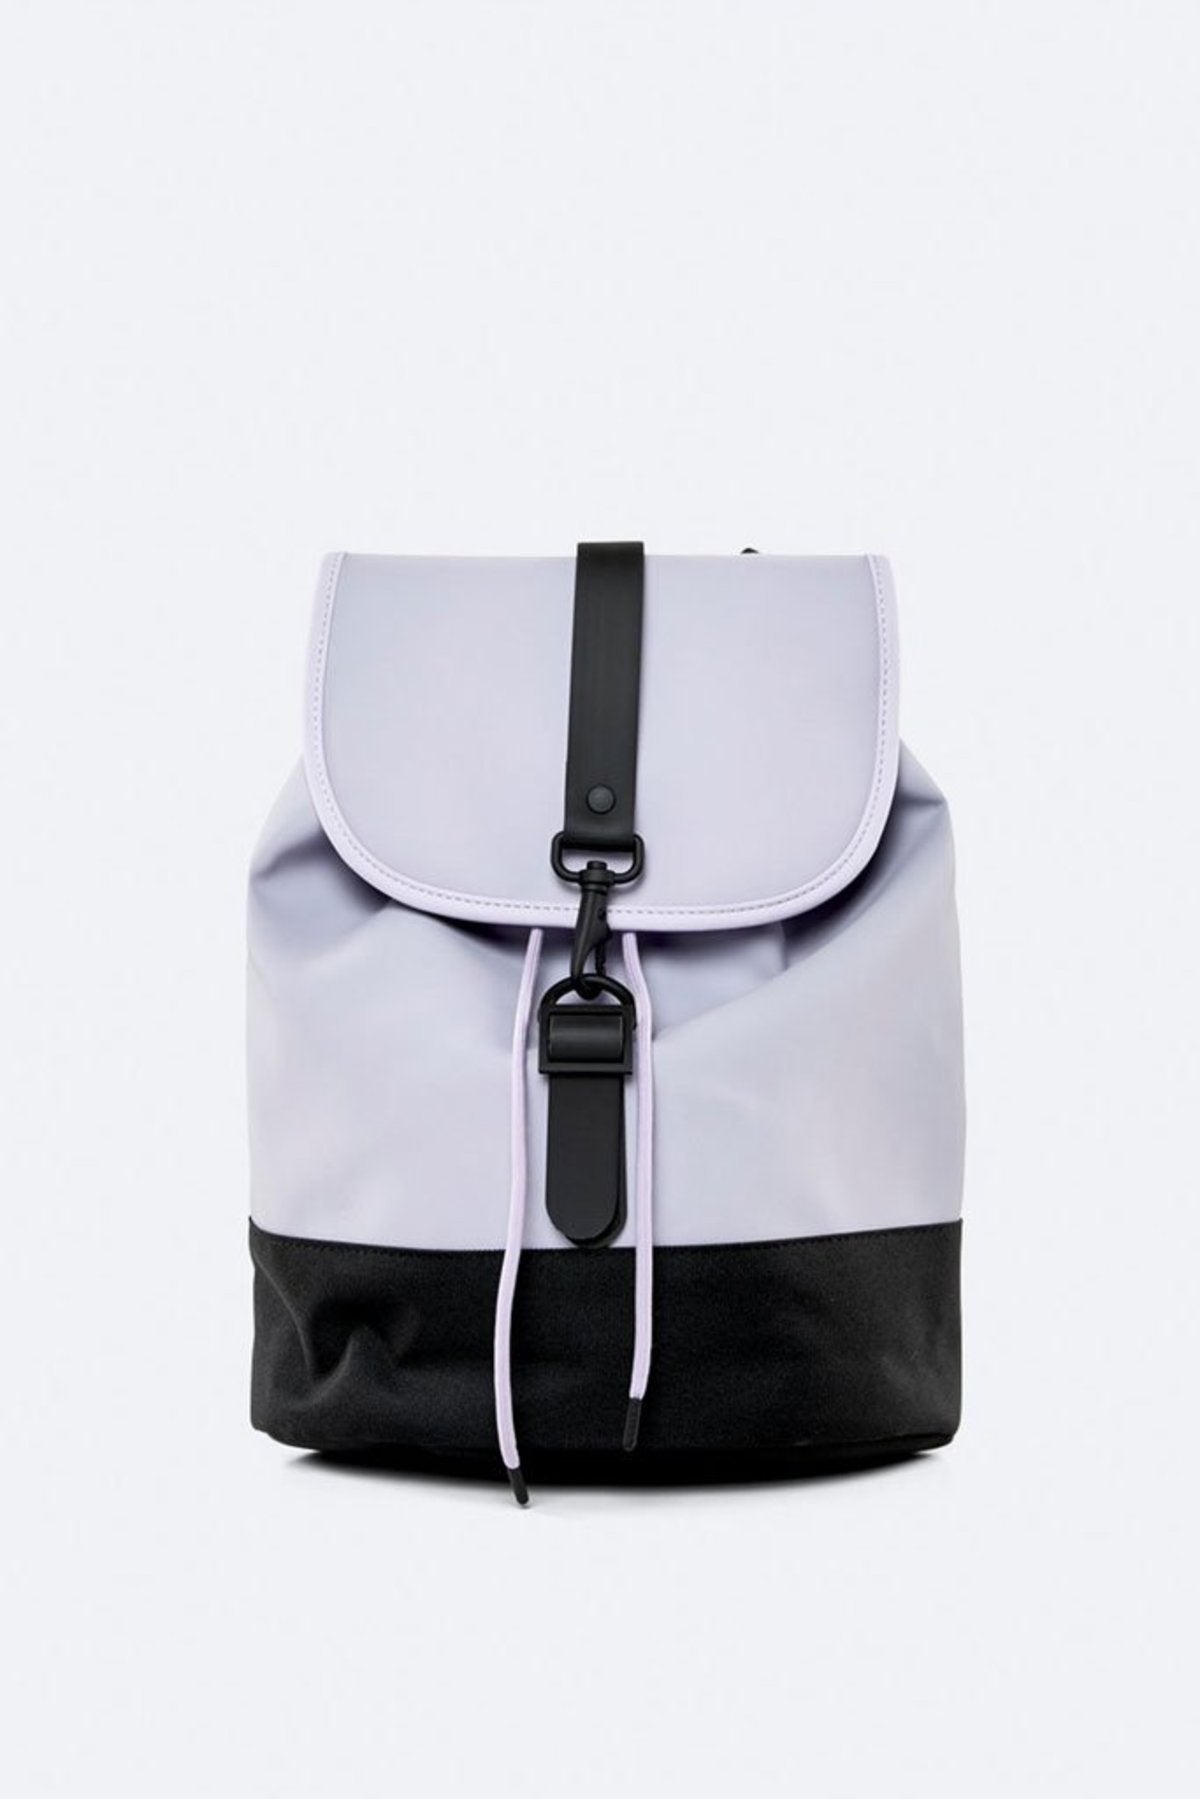 Rains Drawstring Backpack - Lavender hátizsák